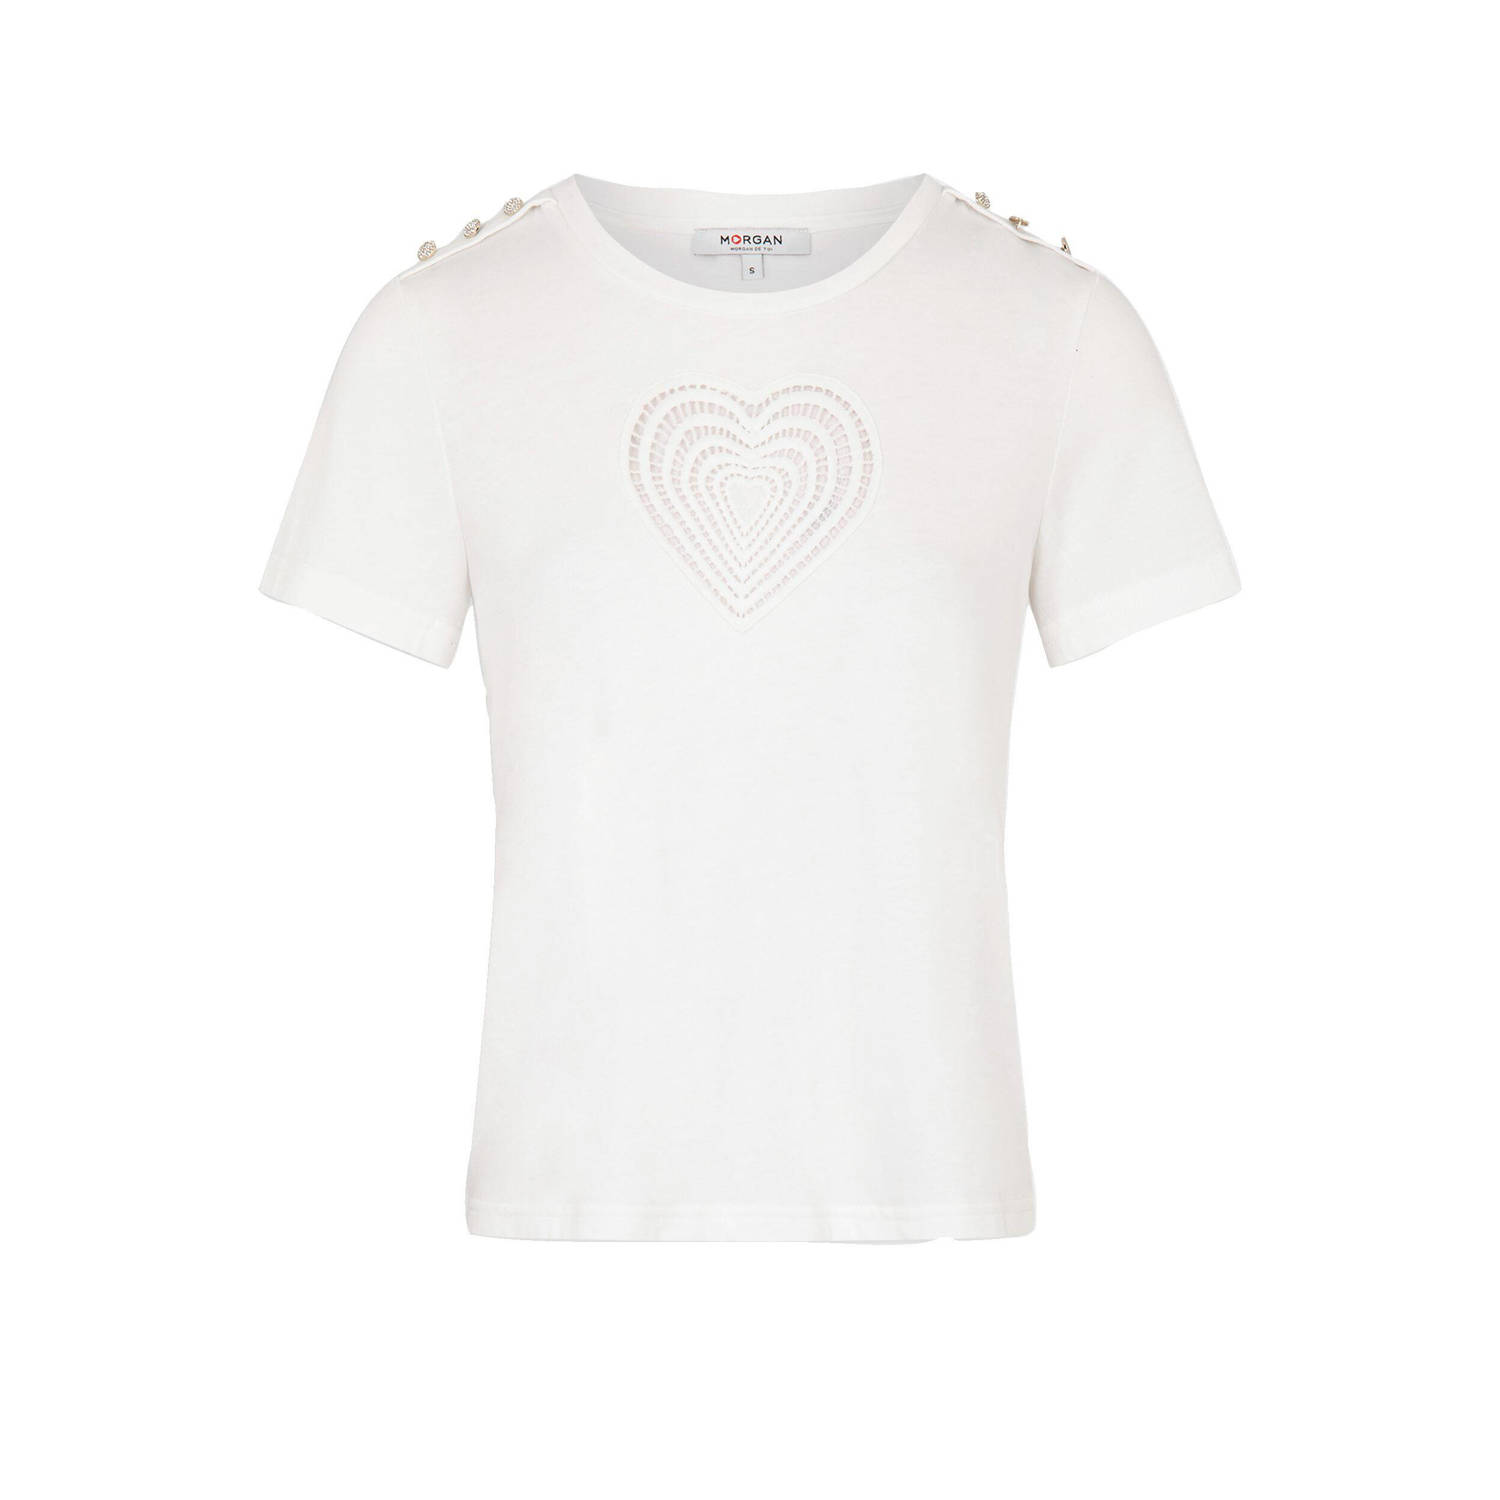 Morgan T-shirt met hartjes en borduursels ecru